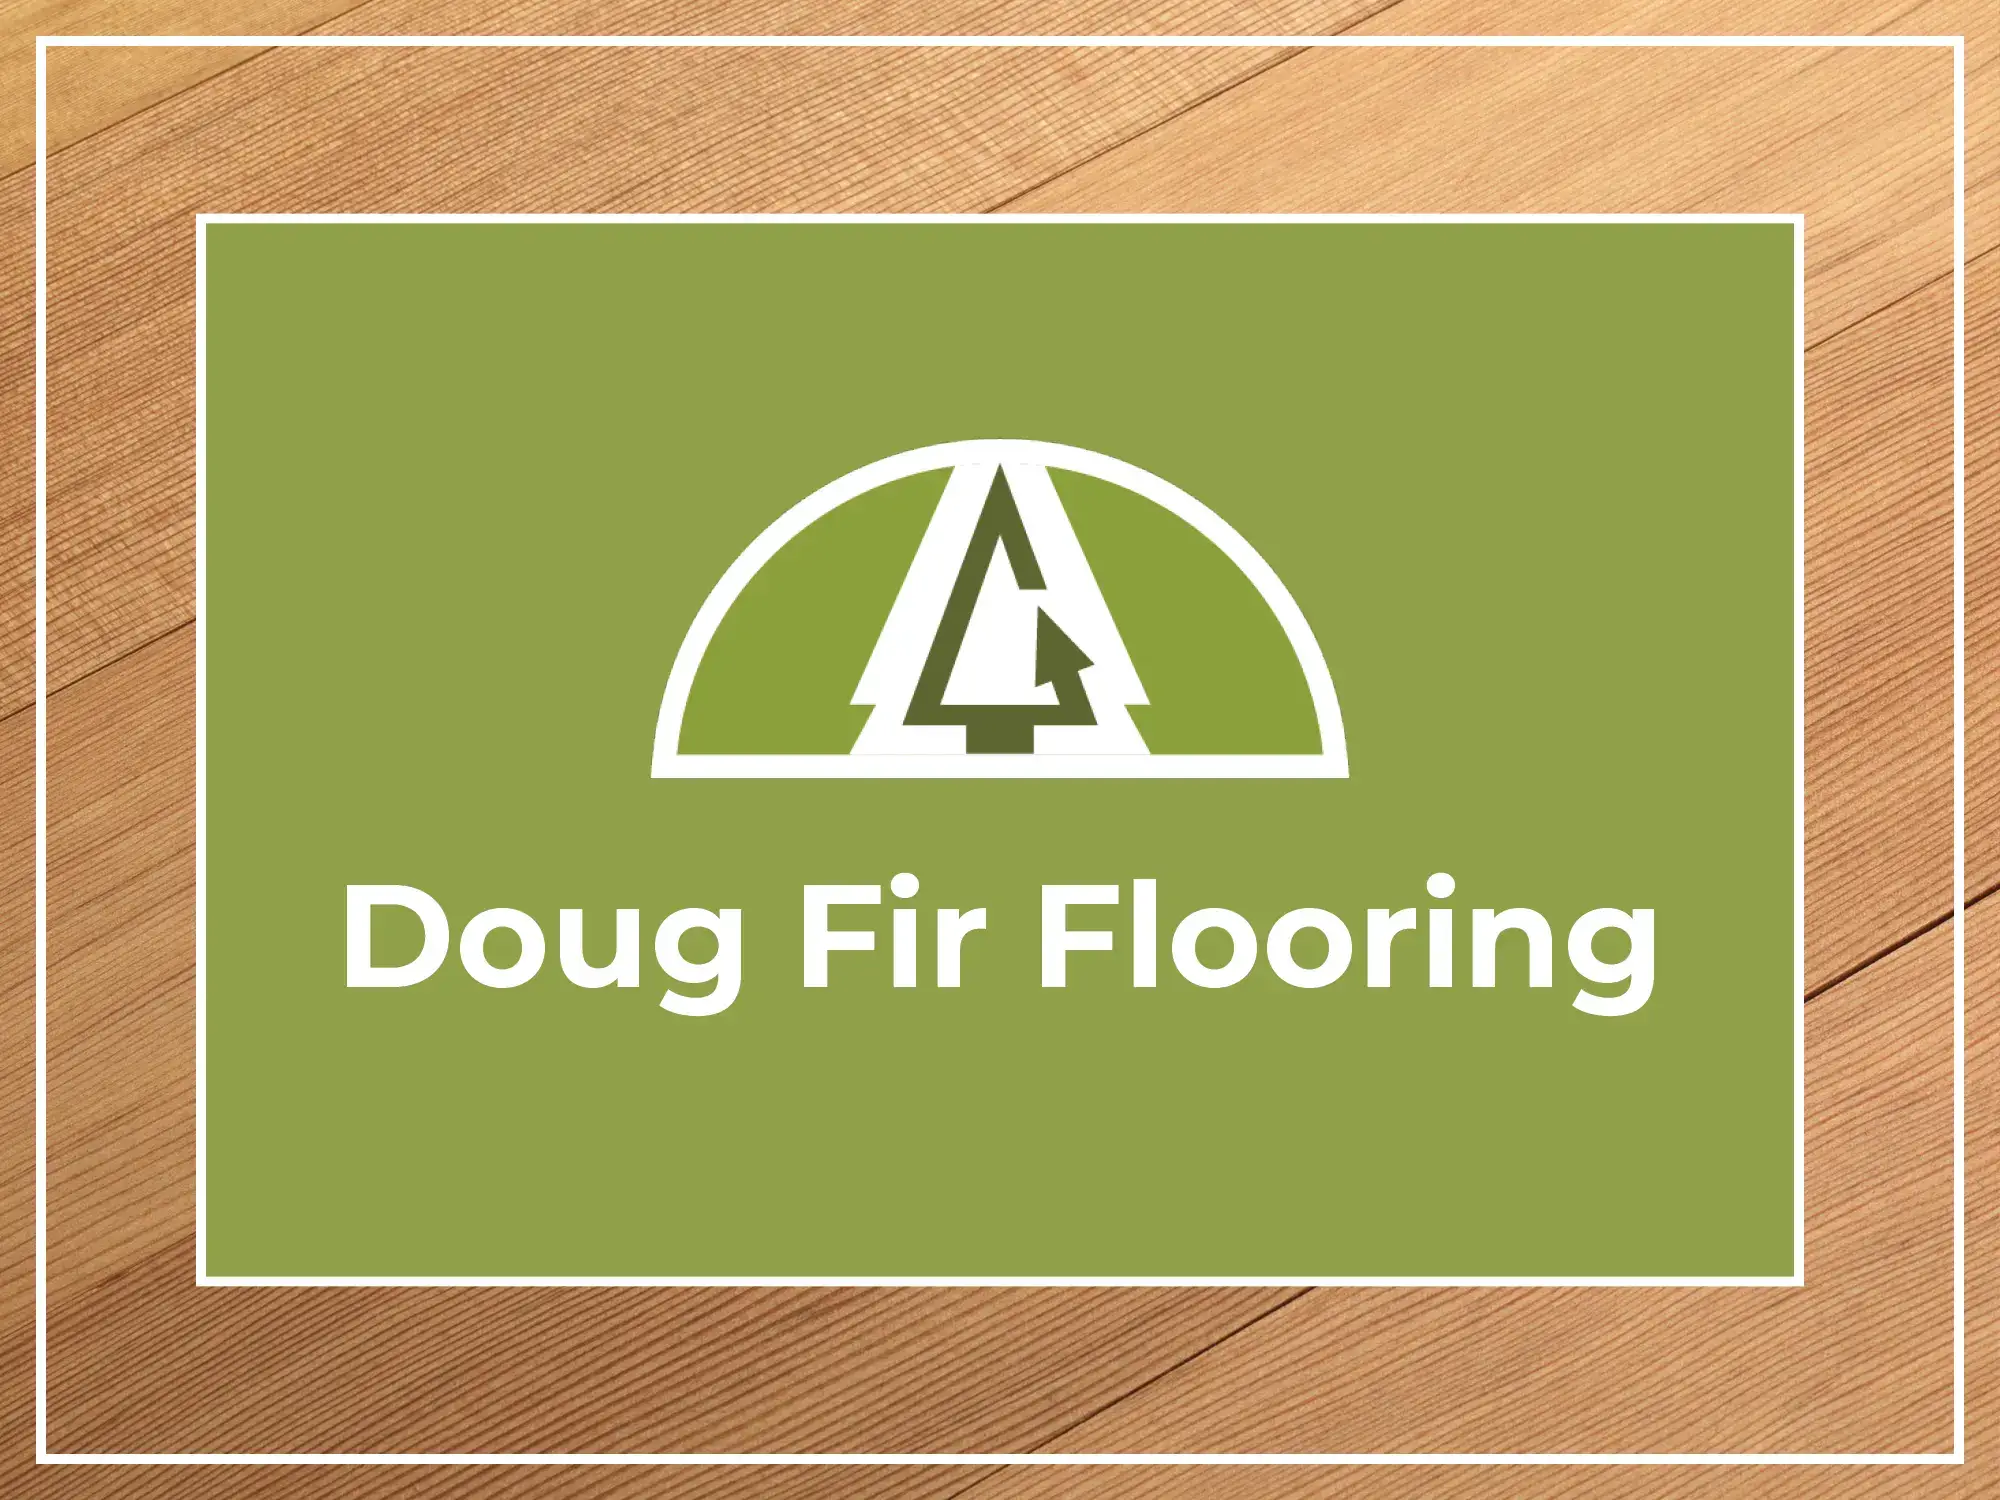 Doug Fir Flooring